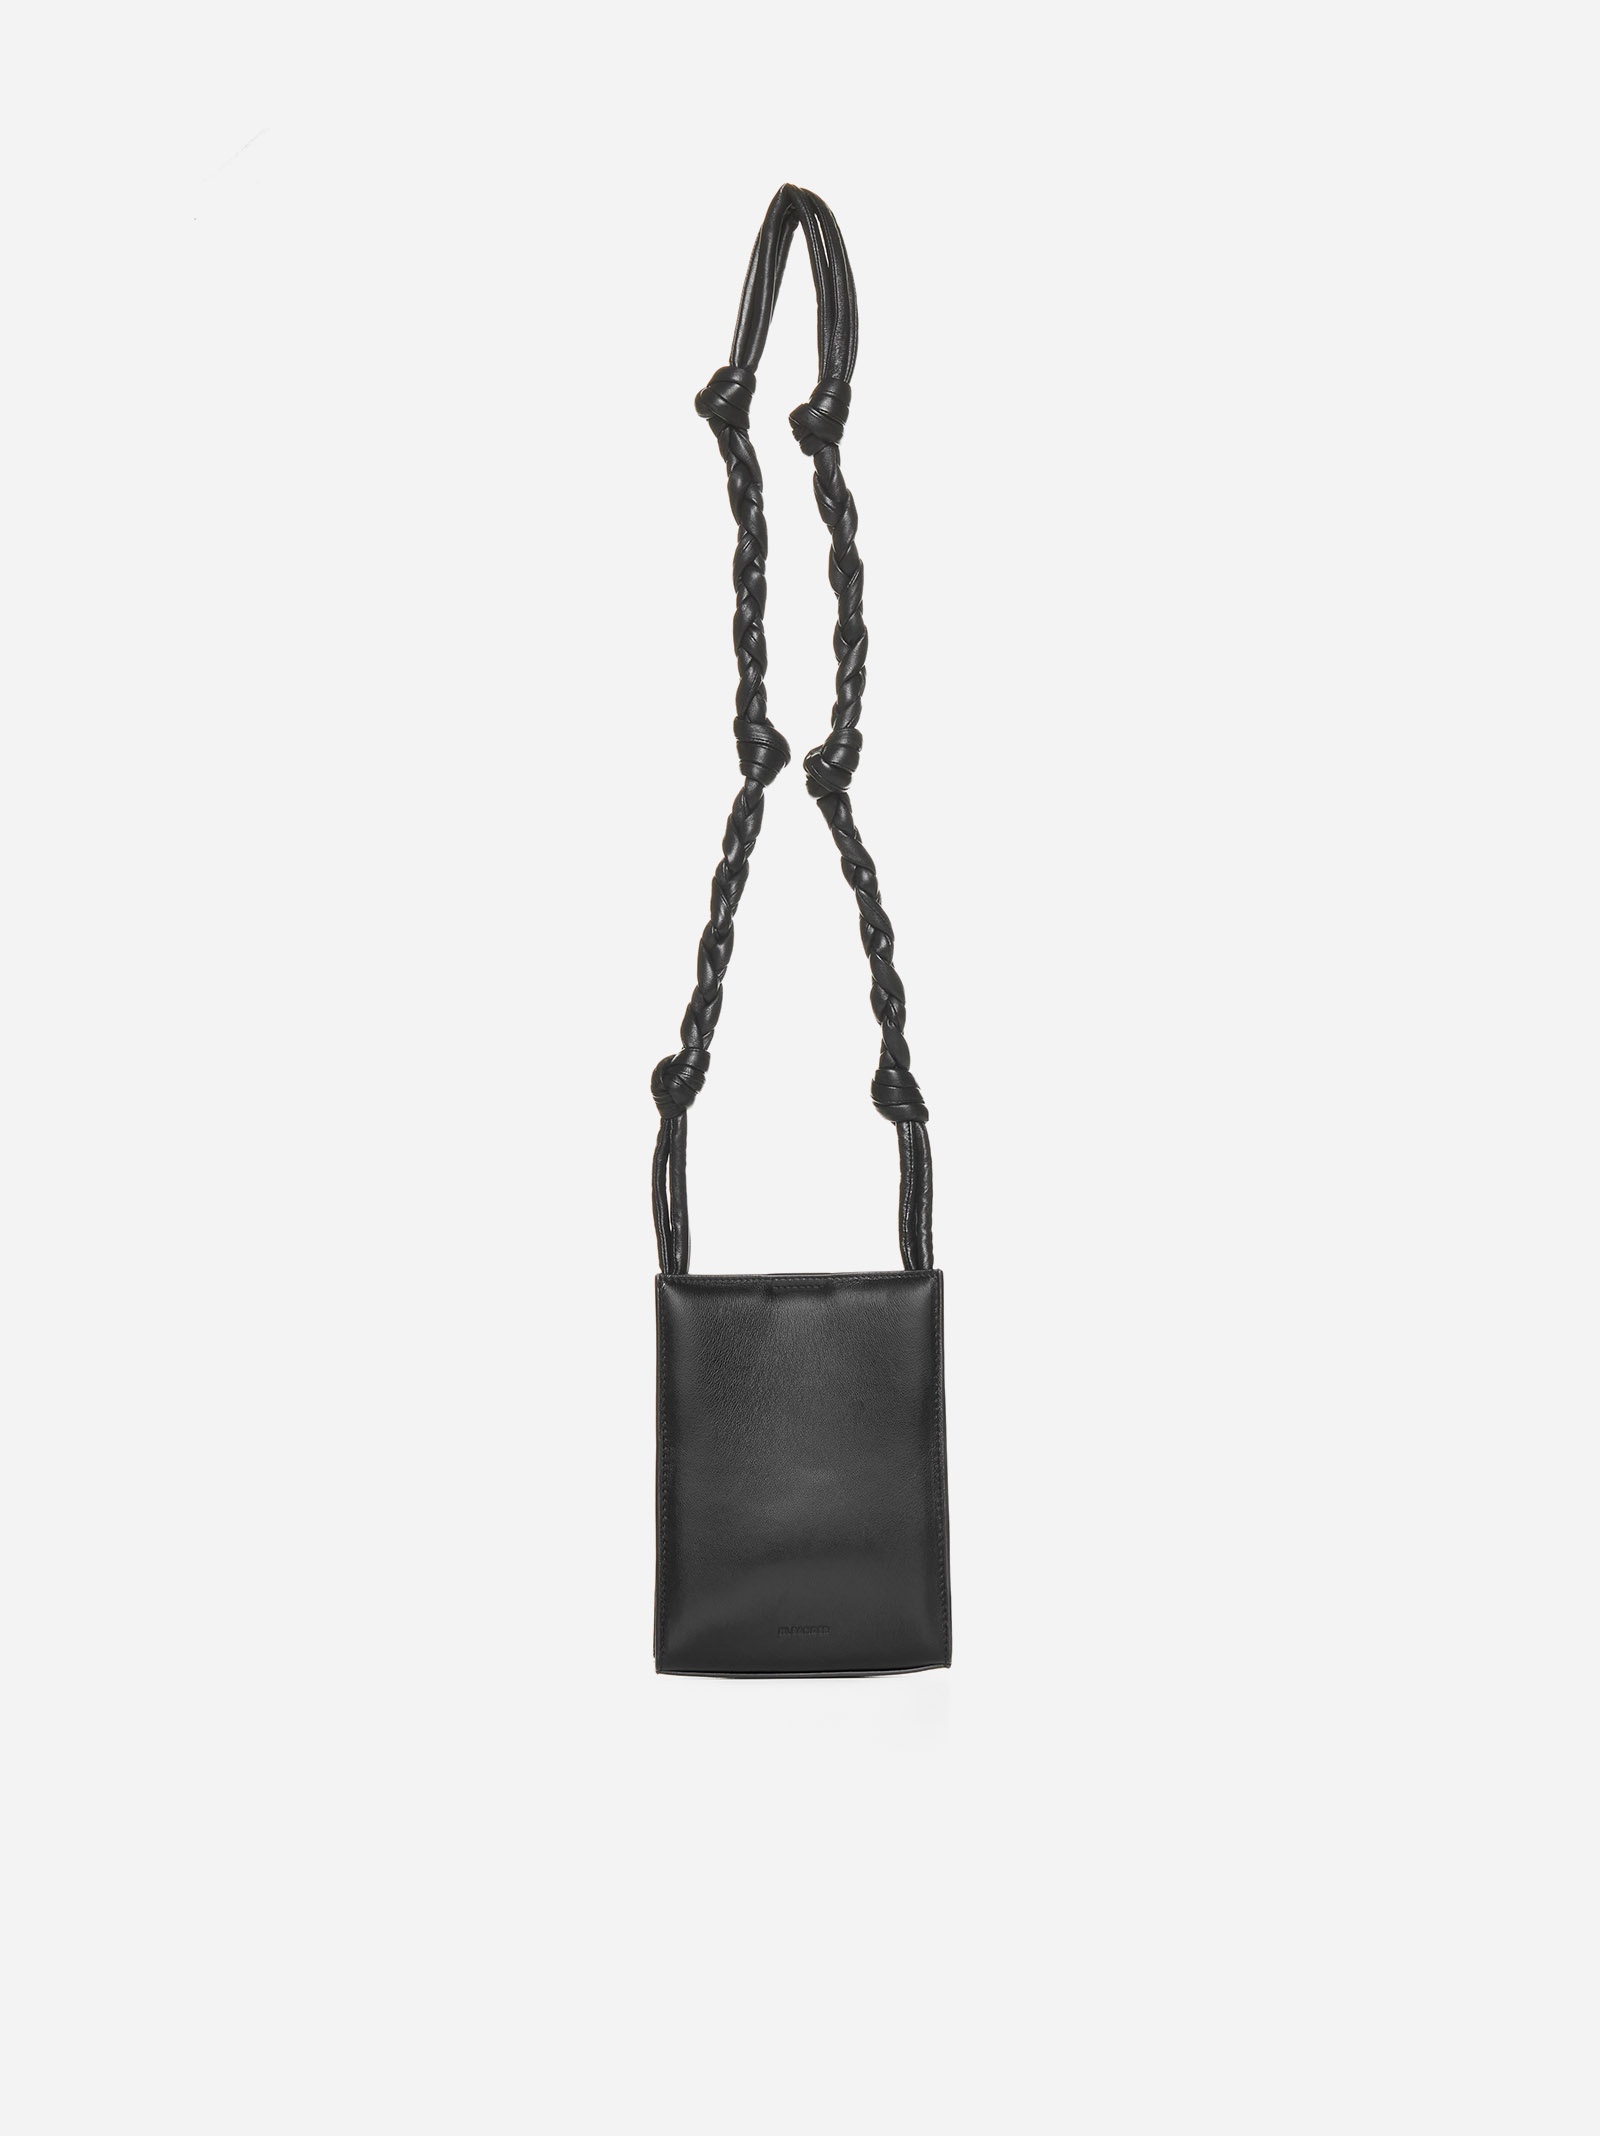 Tangle leather small bag - 1